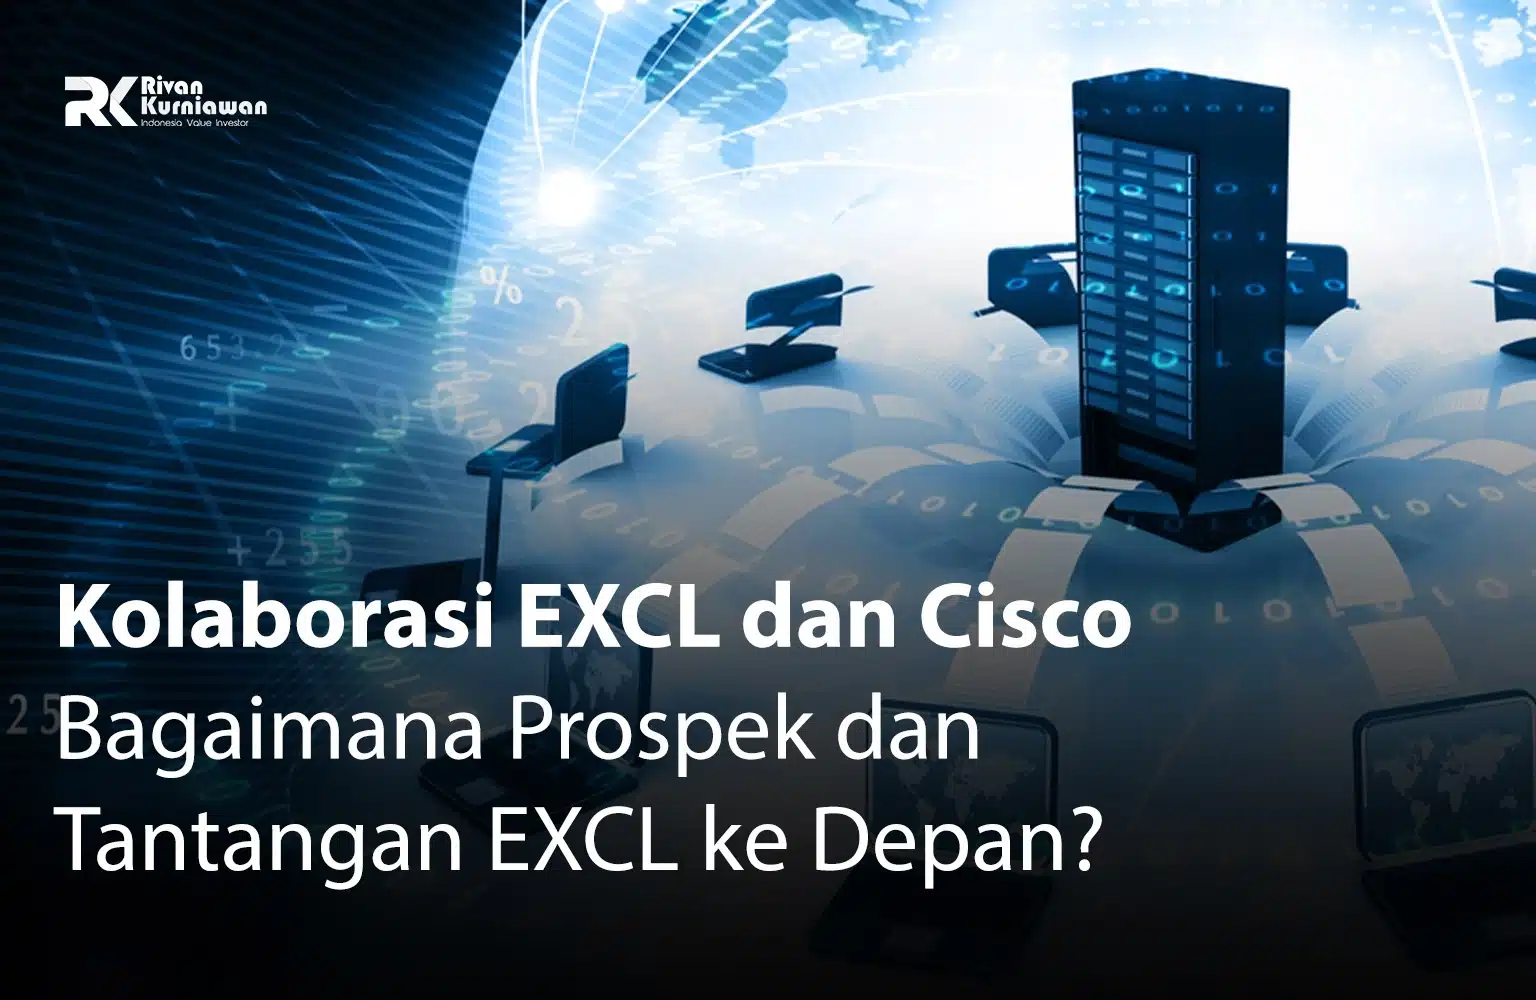 Kolaborasi EXCL dan Cisco